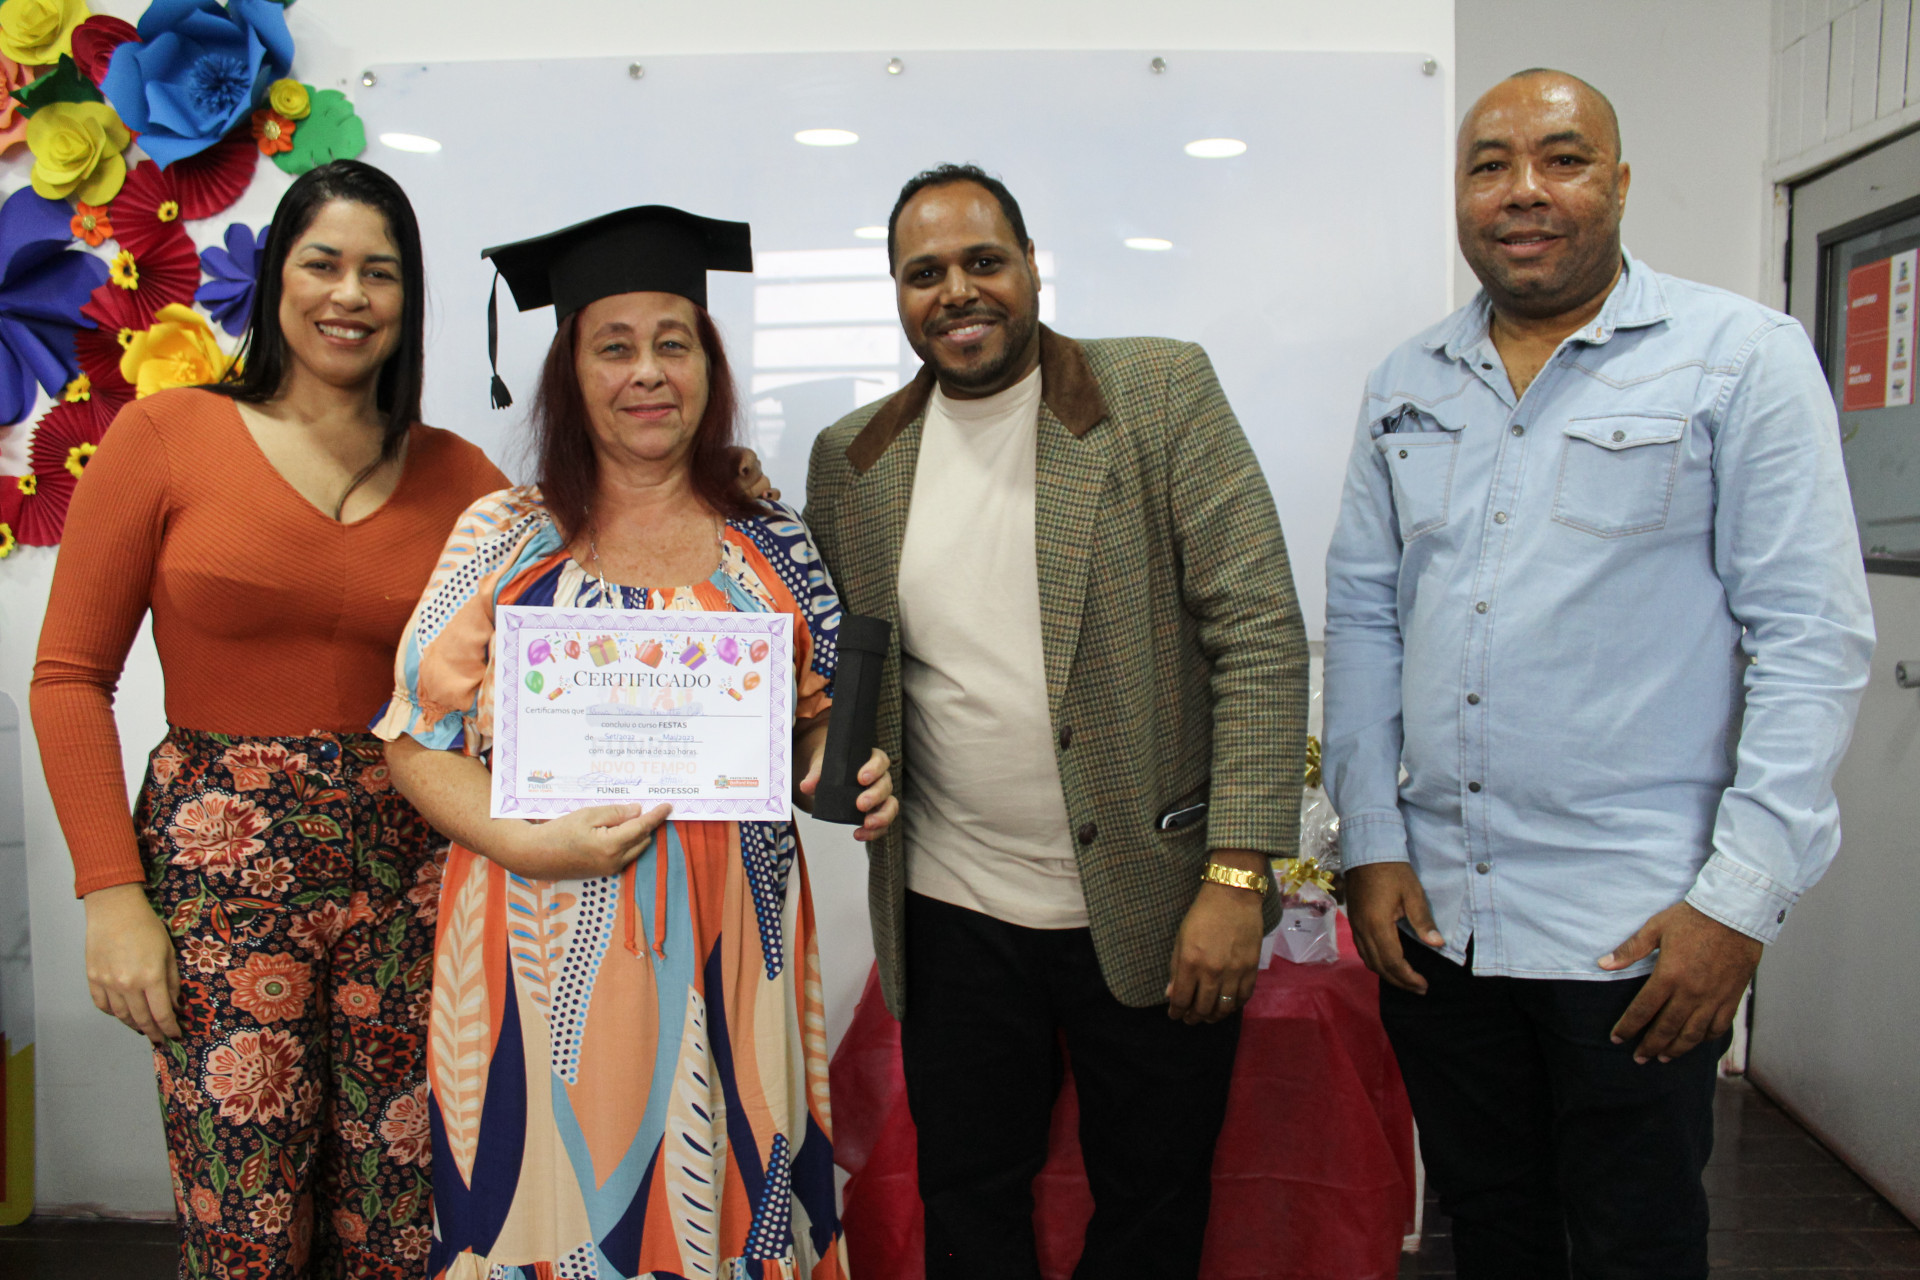 Tânia Maria (2ª da esquerda para a direita) recebeu o diploma e foi parabenizada por Clarice Santos, Tom e Adriano Floriano - Divulgação